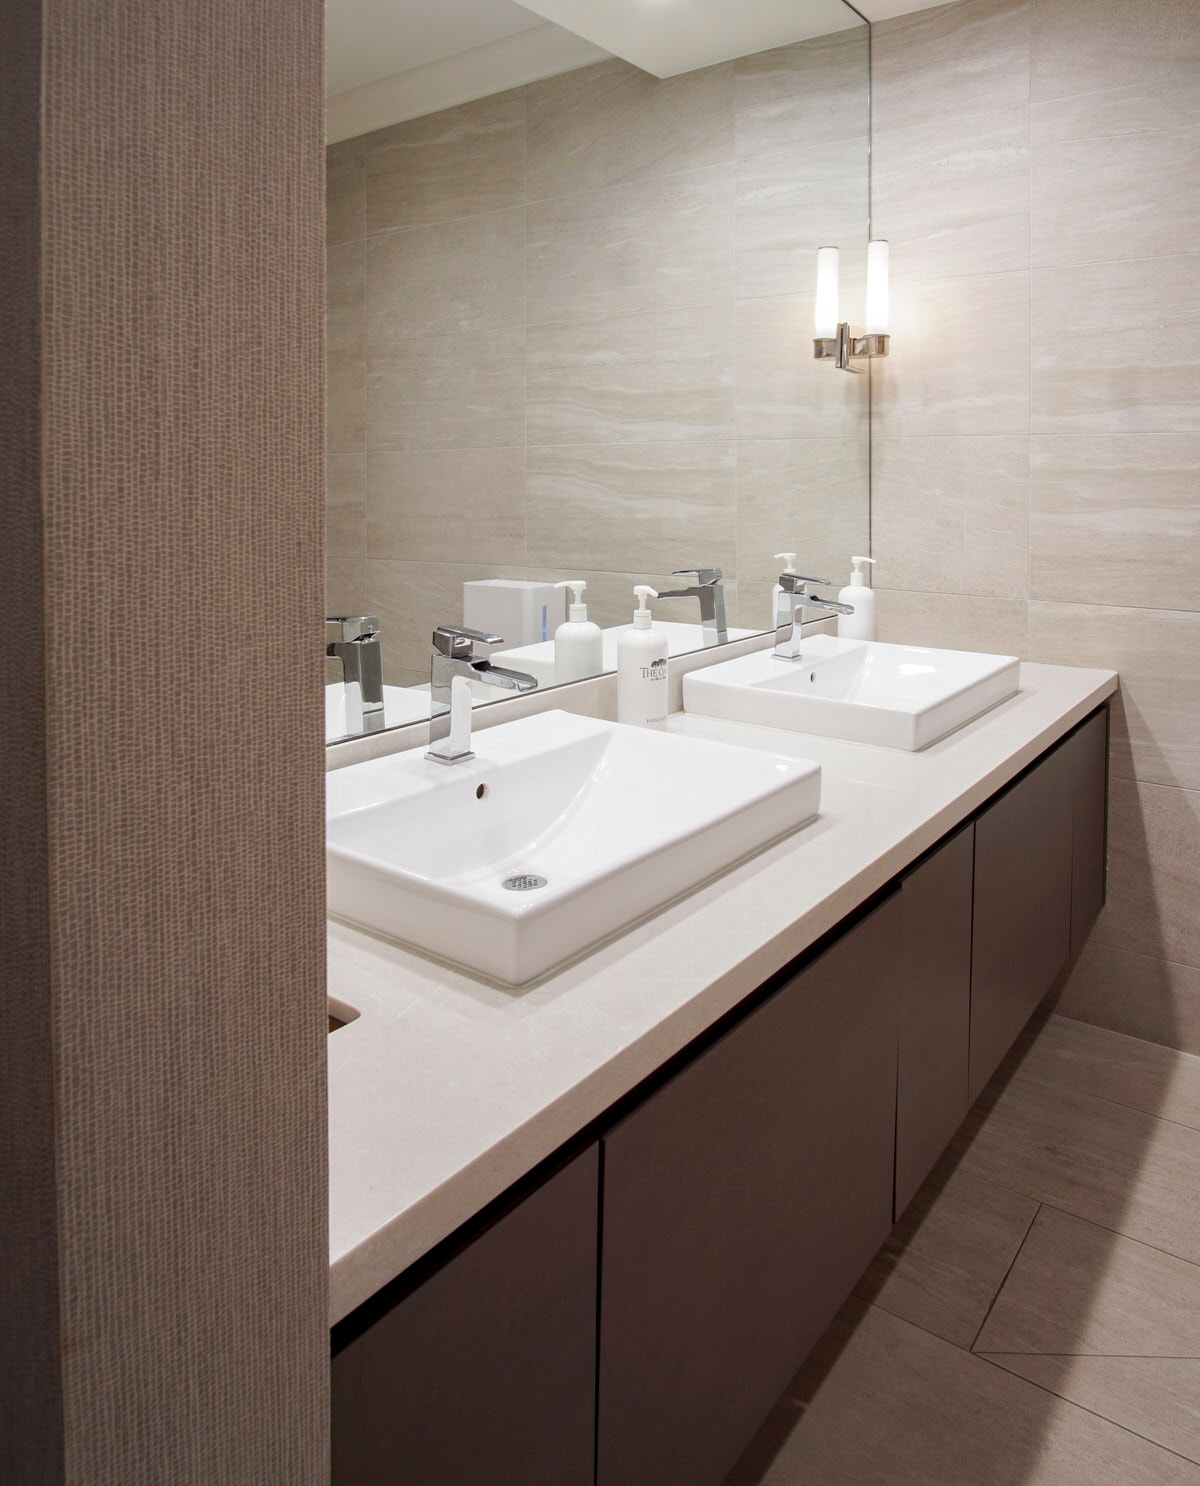 sink vanity commercial design